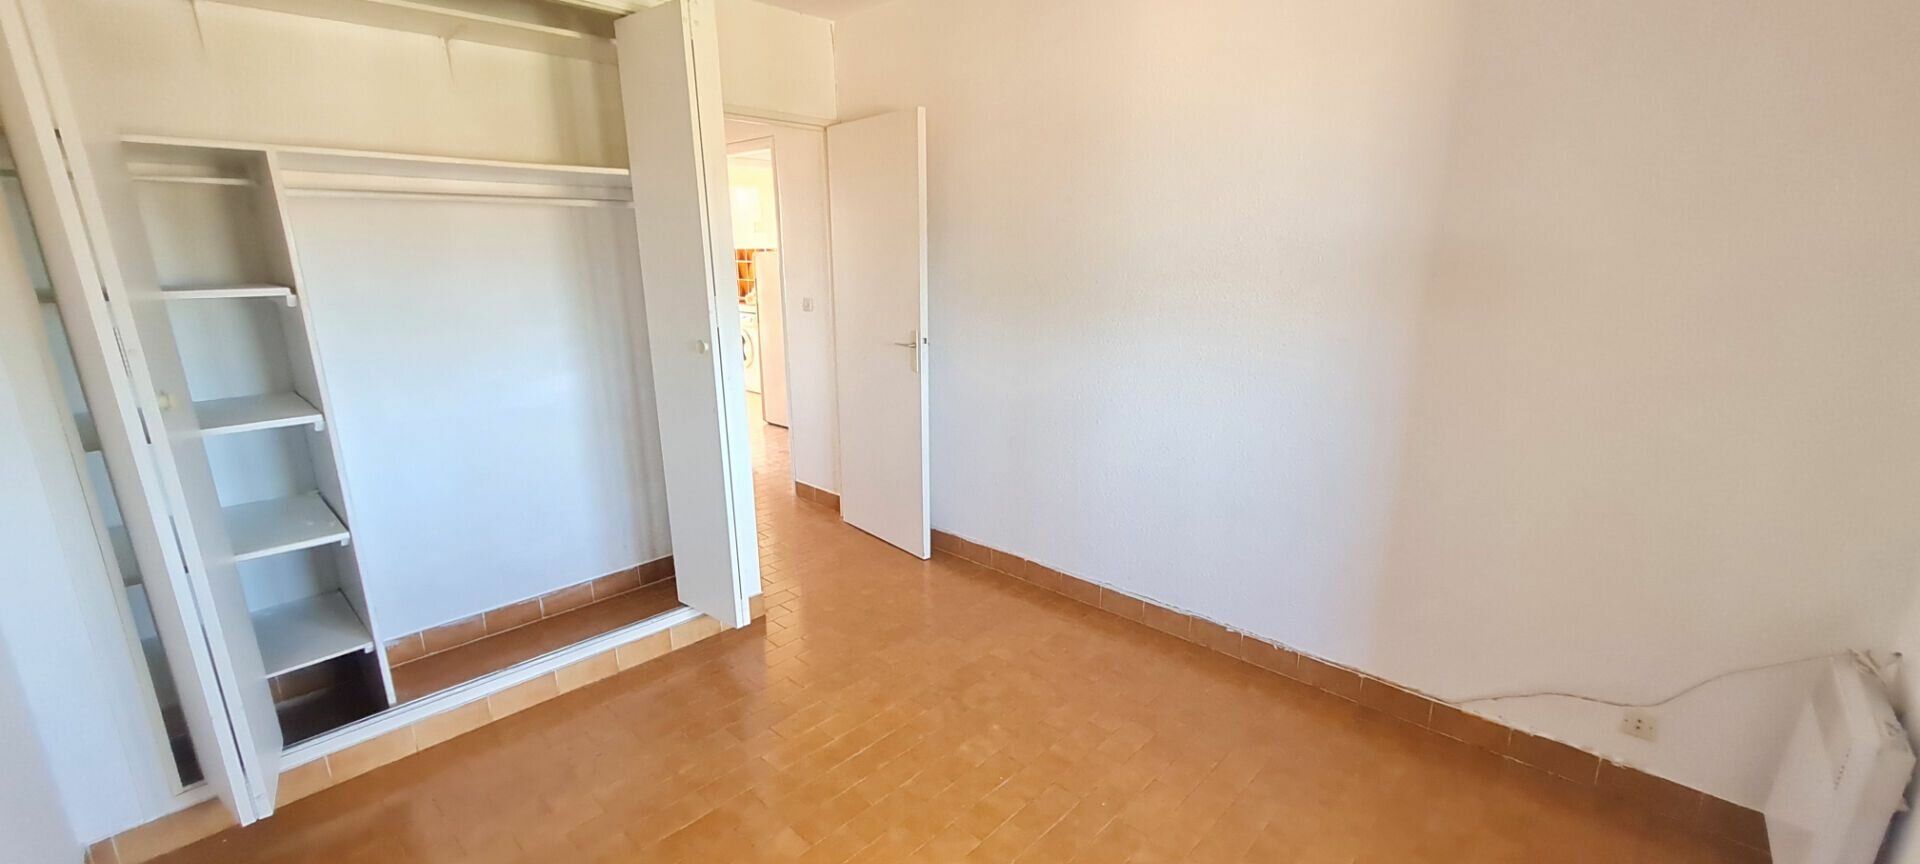 Appartement à vendre 2 58m2 à Saint-Cyr-sur-Mer vignette-5